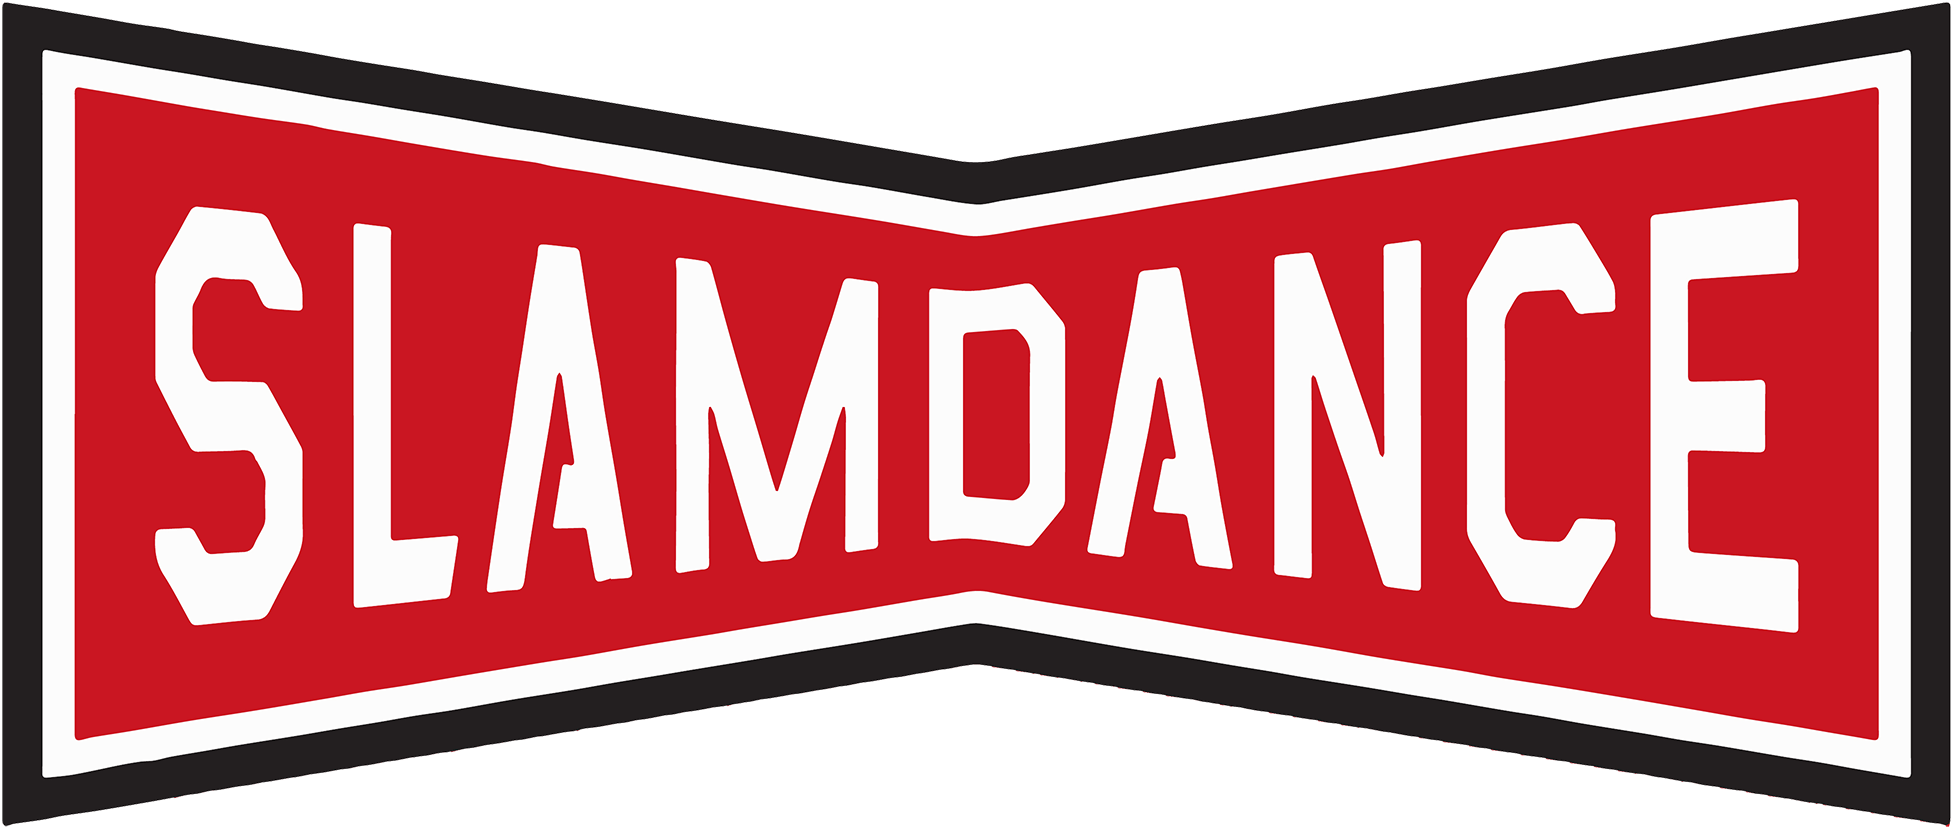 379-3796231_slamdance-film-festival-logo.png